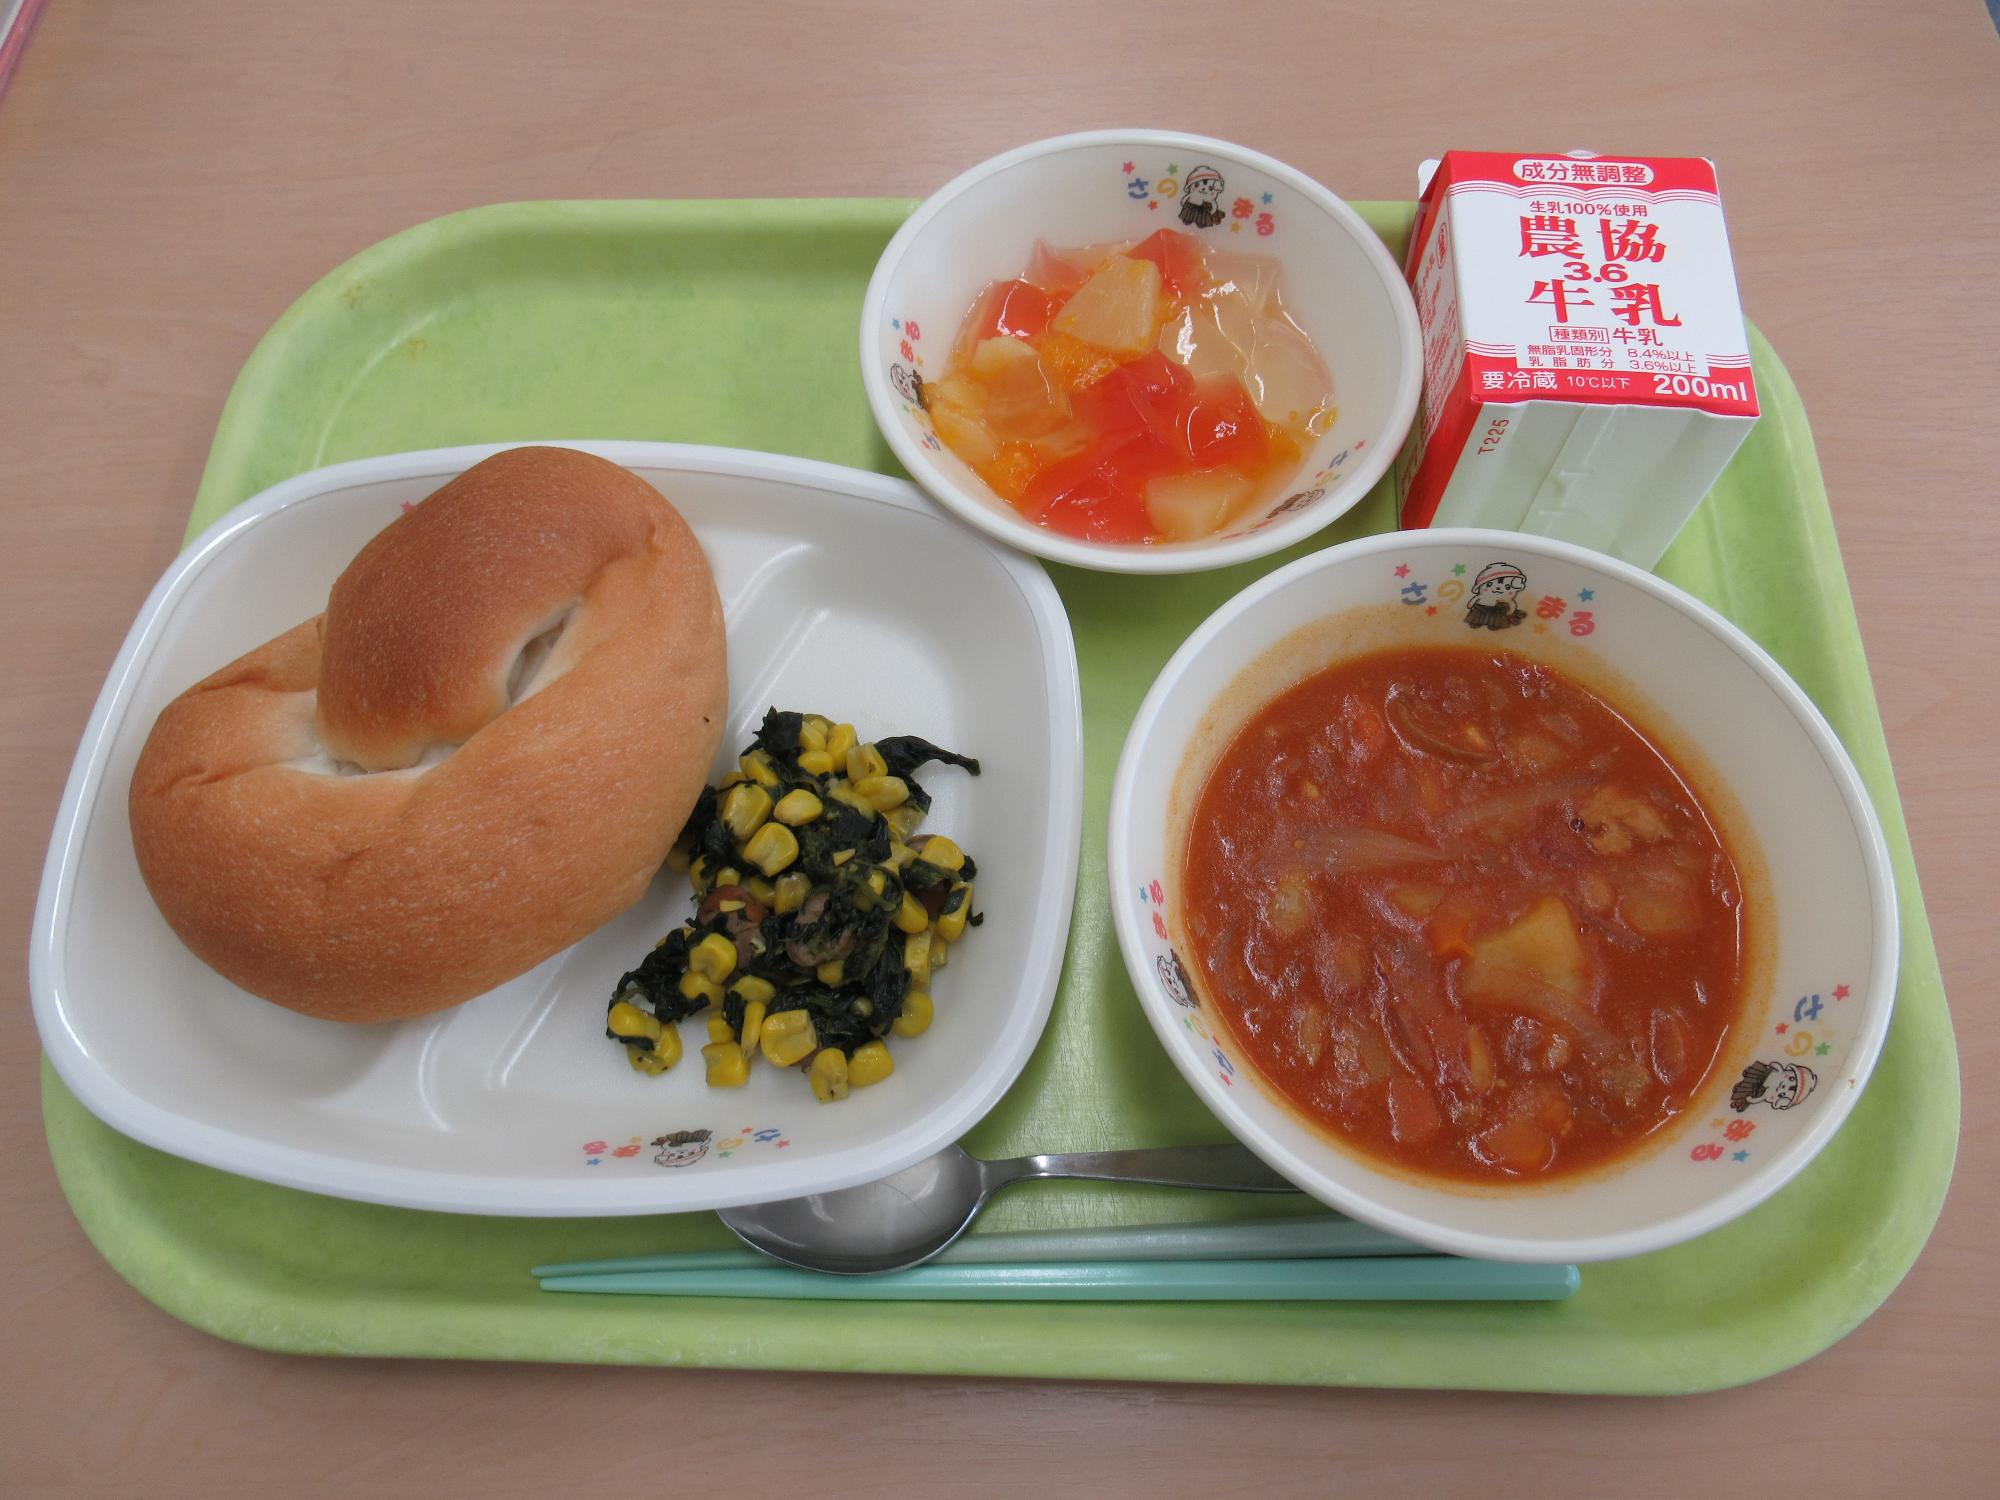 令和5年9月13日南部学校給食センター給食写真